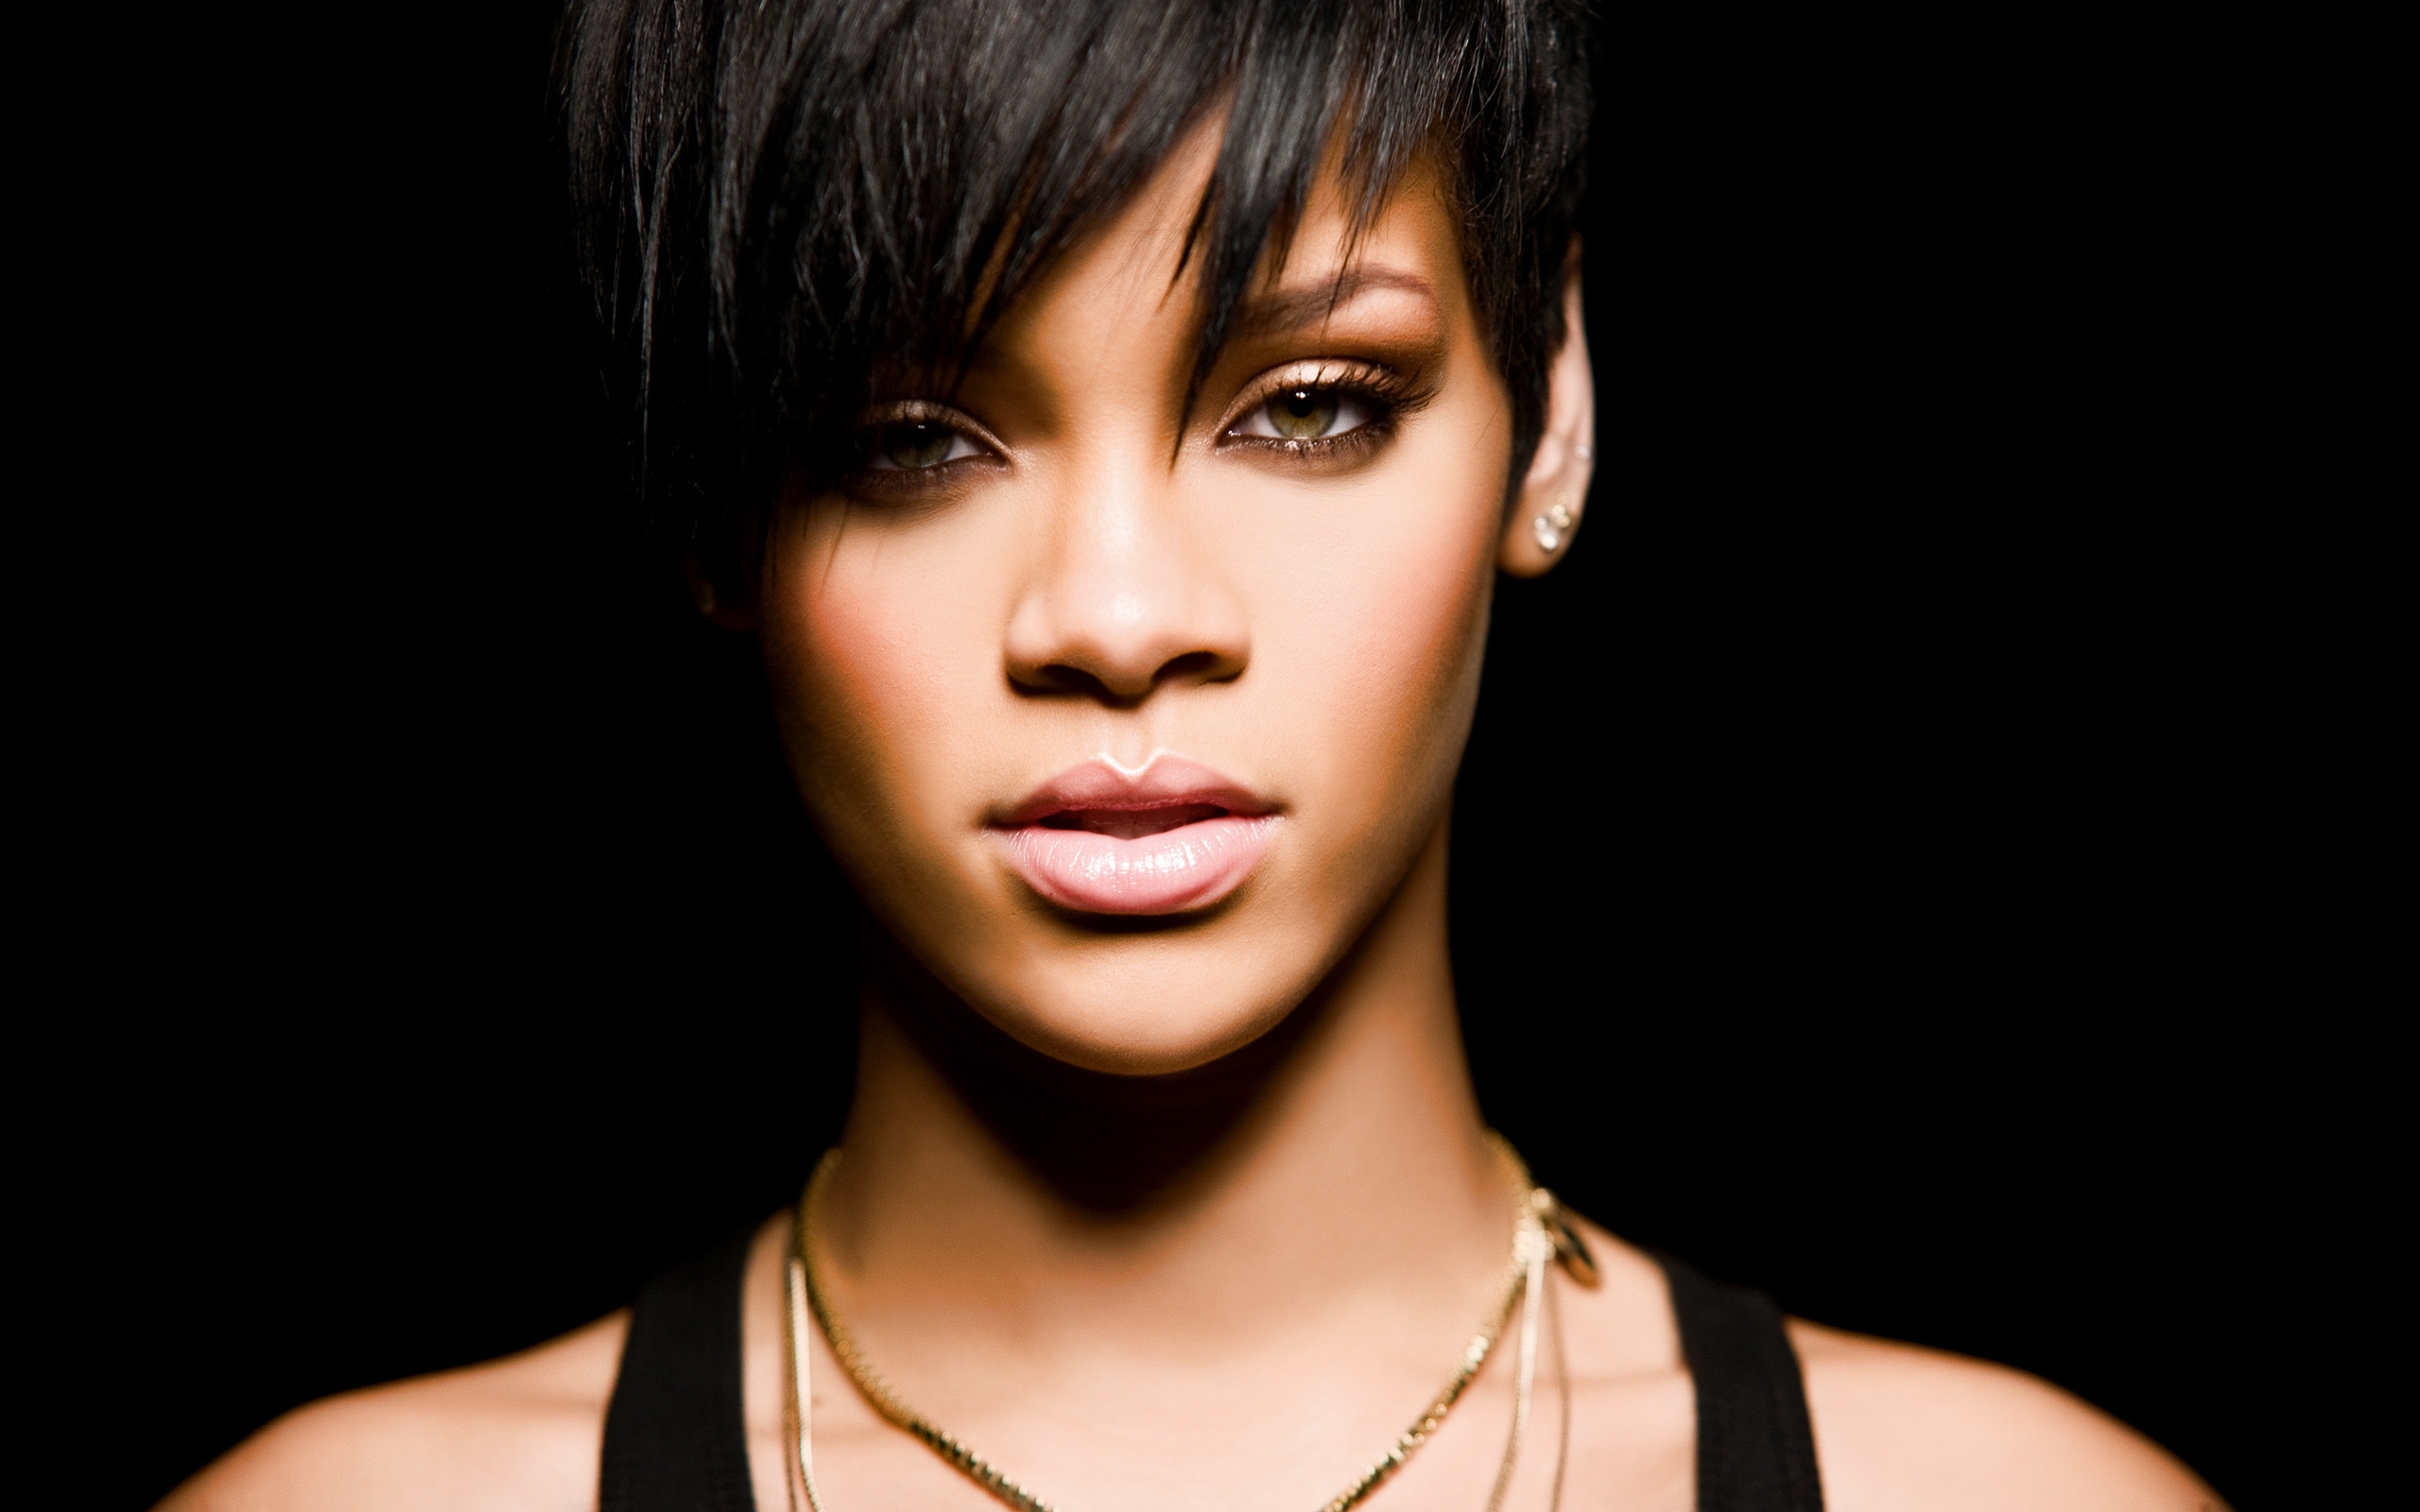 Rihanna for 2560 x 1600 widescreen resolution